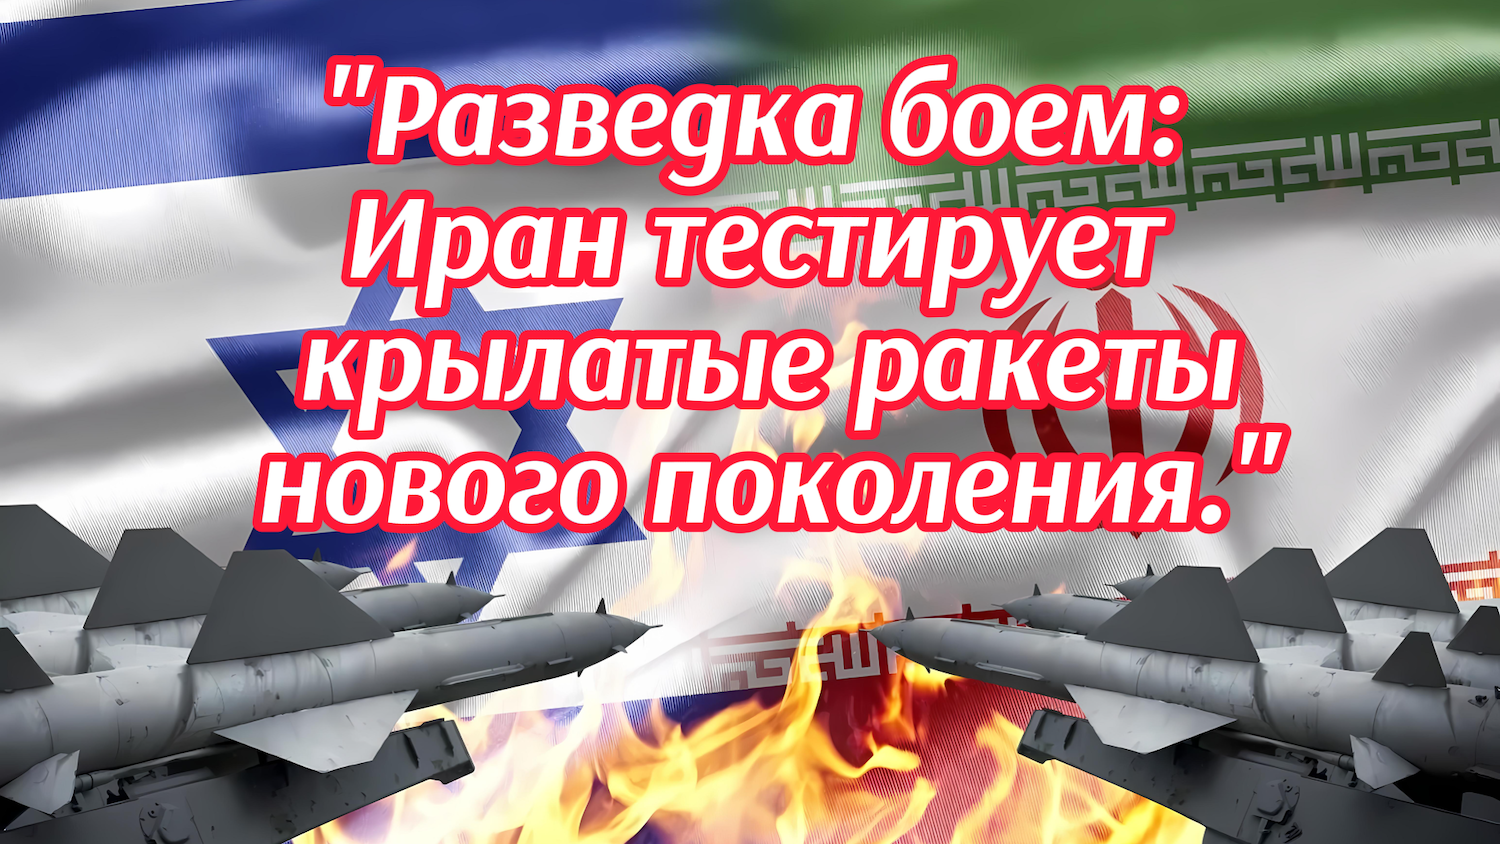 "Разведка боем: ИРАН тестирует крылатые ракеты нового поколения."